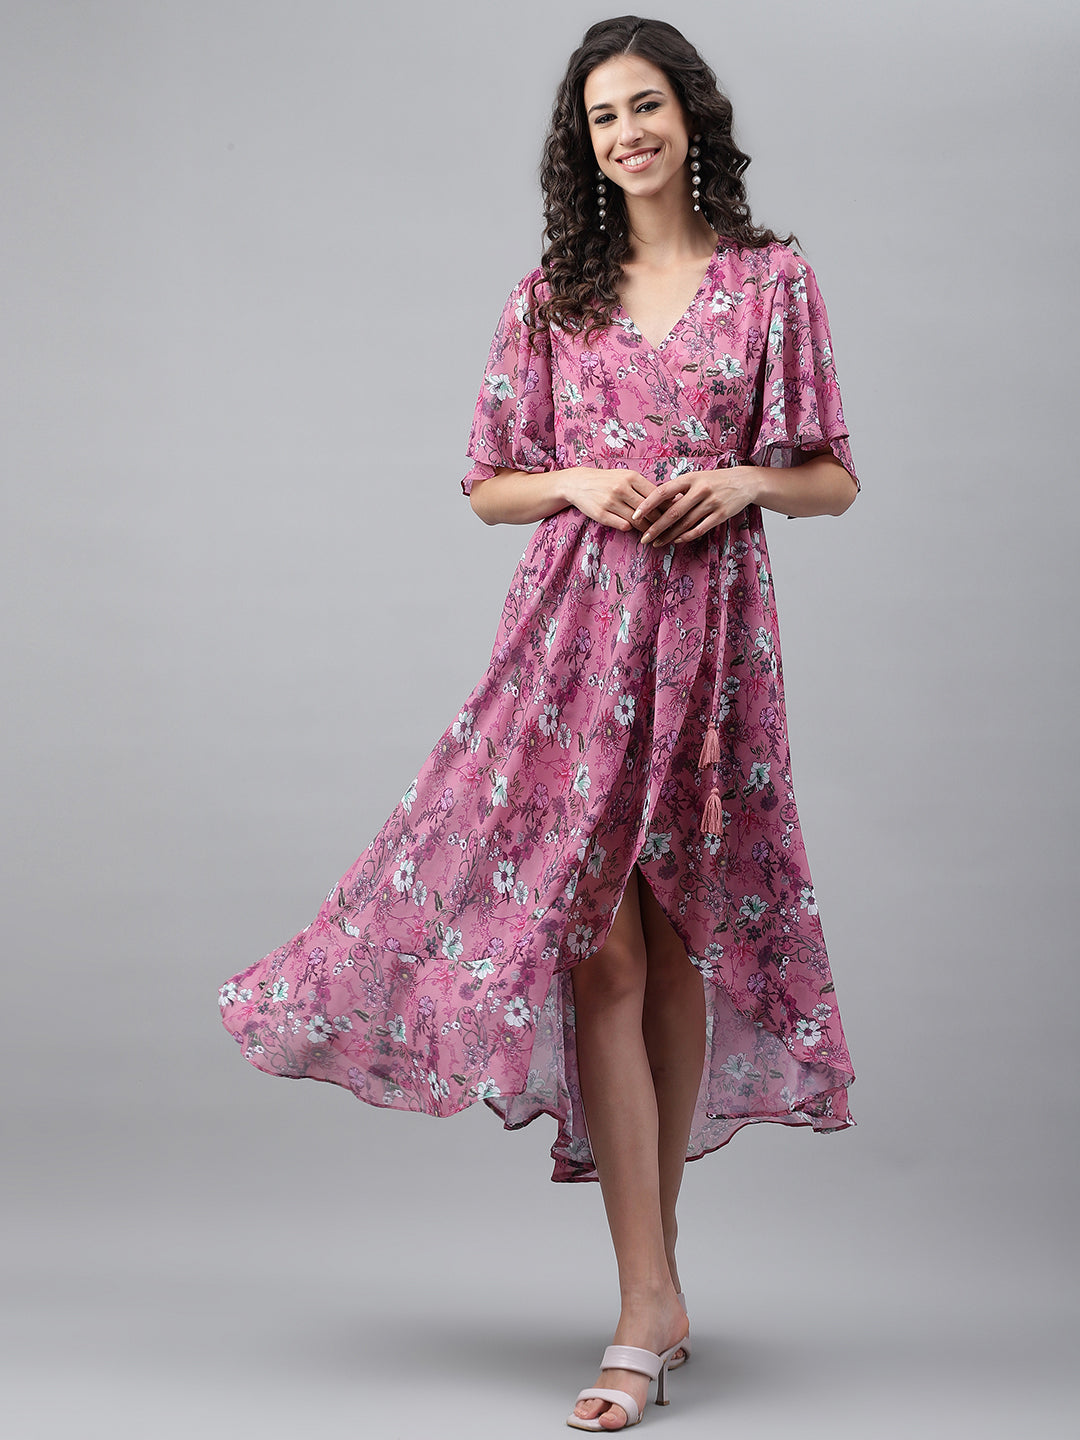 Women's Digital Printed Pink Georgette Dress - Janasya